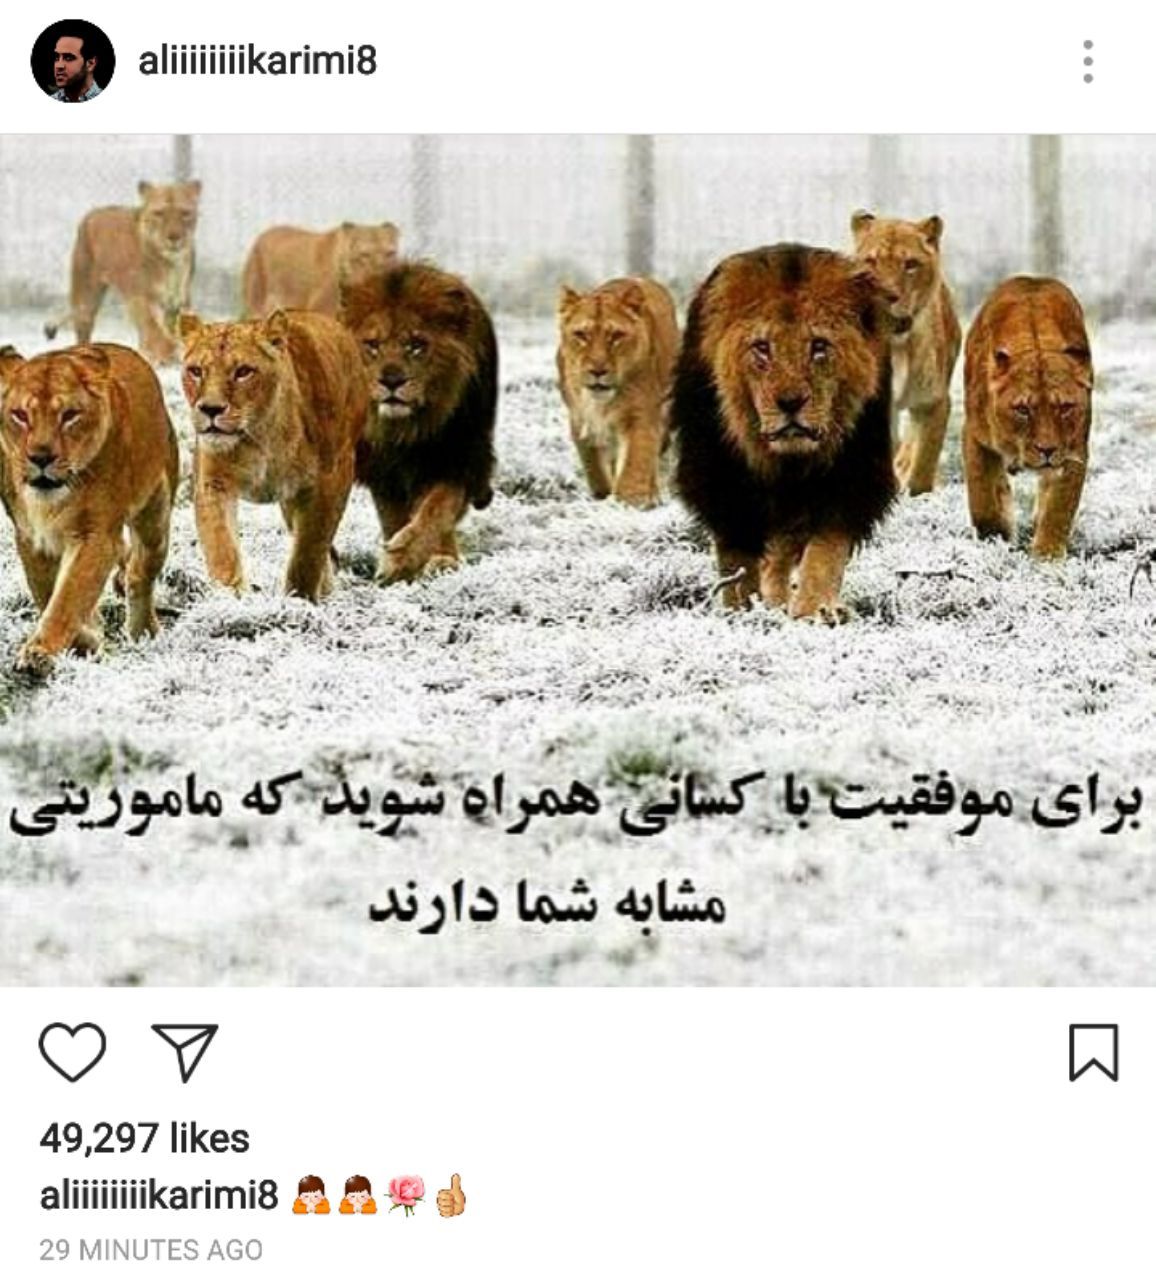 واکنش اینستاگرامی علی کریمی بعد از جدایی از تیم نفت (عكس)